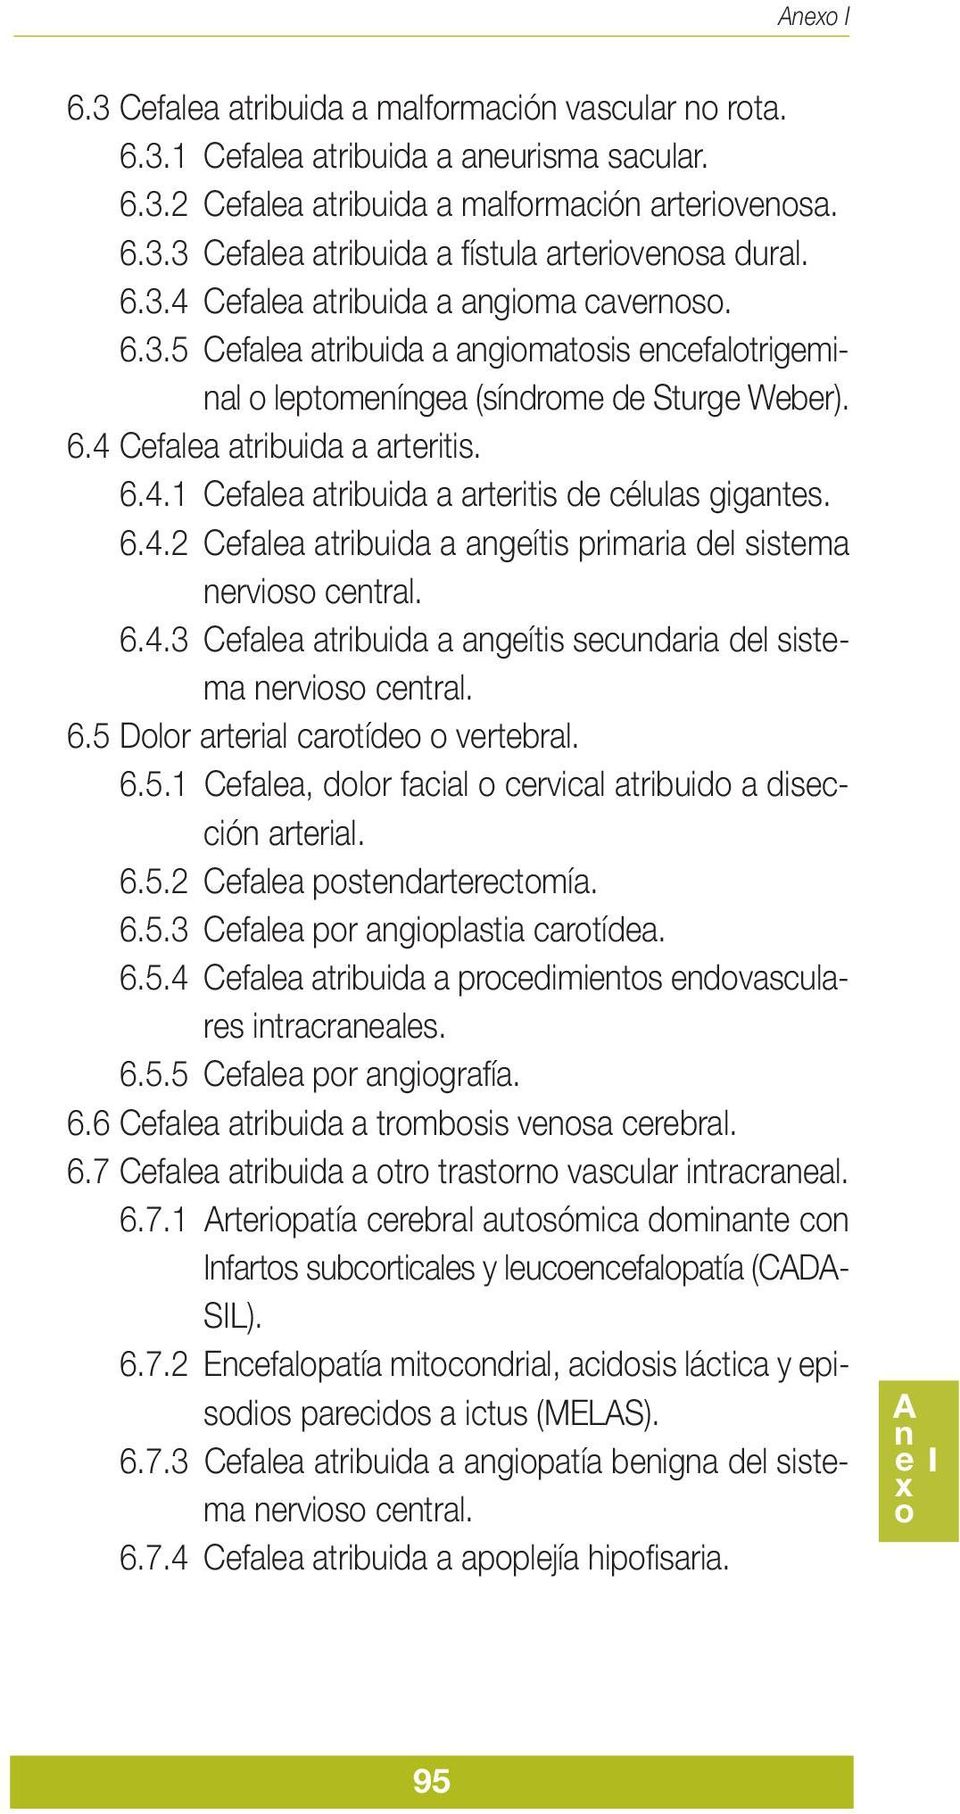 6.4.2 Cefalea atribuida a angeítis primaria del sistema nervioso central. 6.4.3 Cefalea atribuida a angeítis secundaria del sistema nervioso central. 6.5 